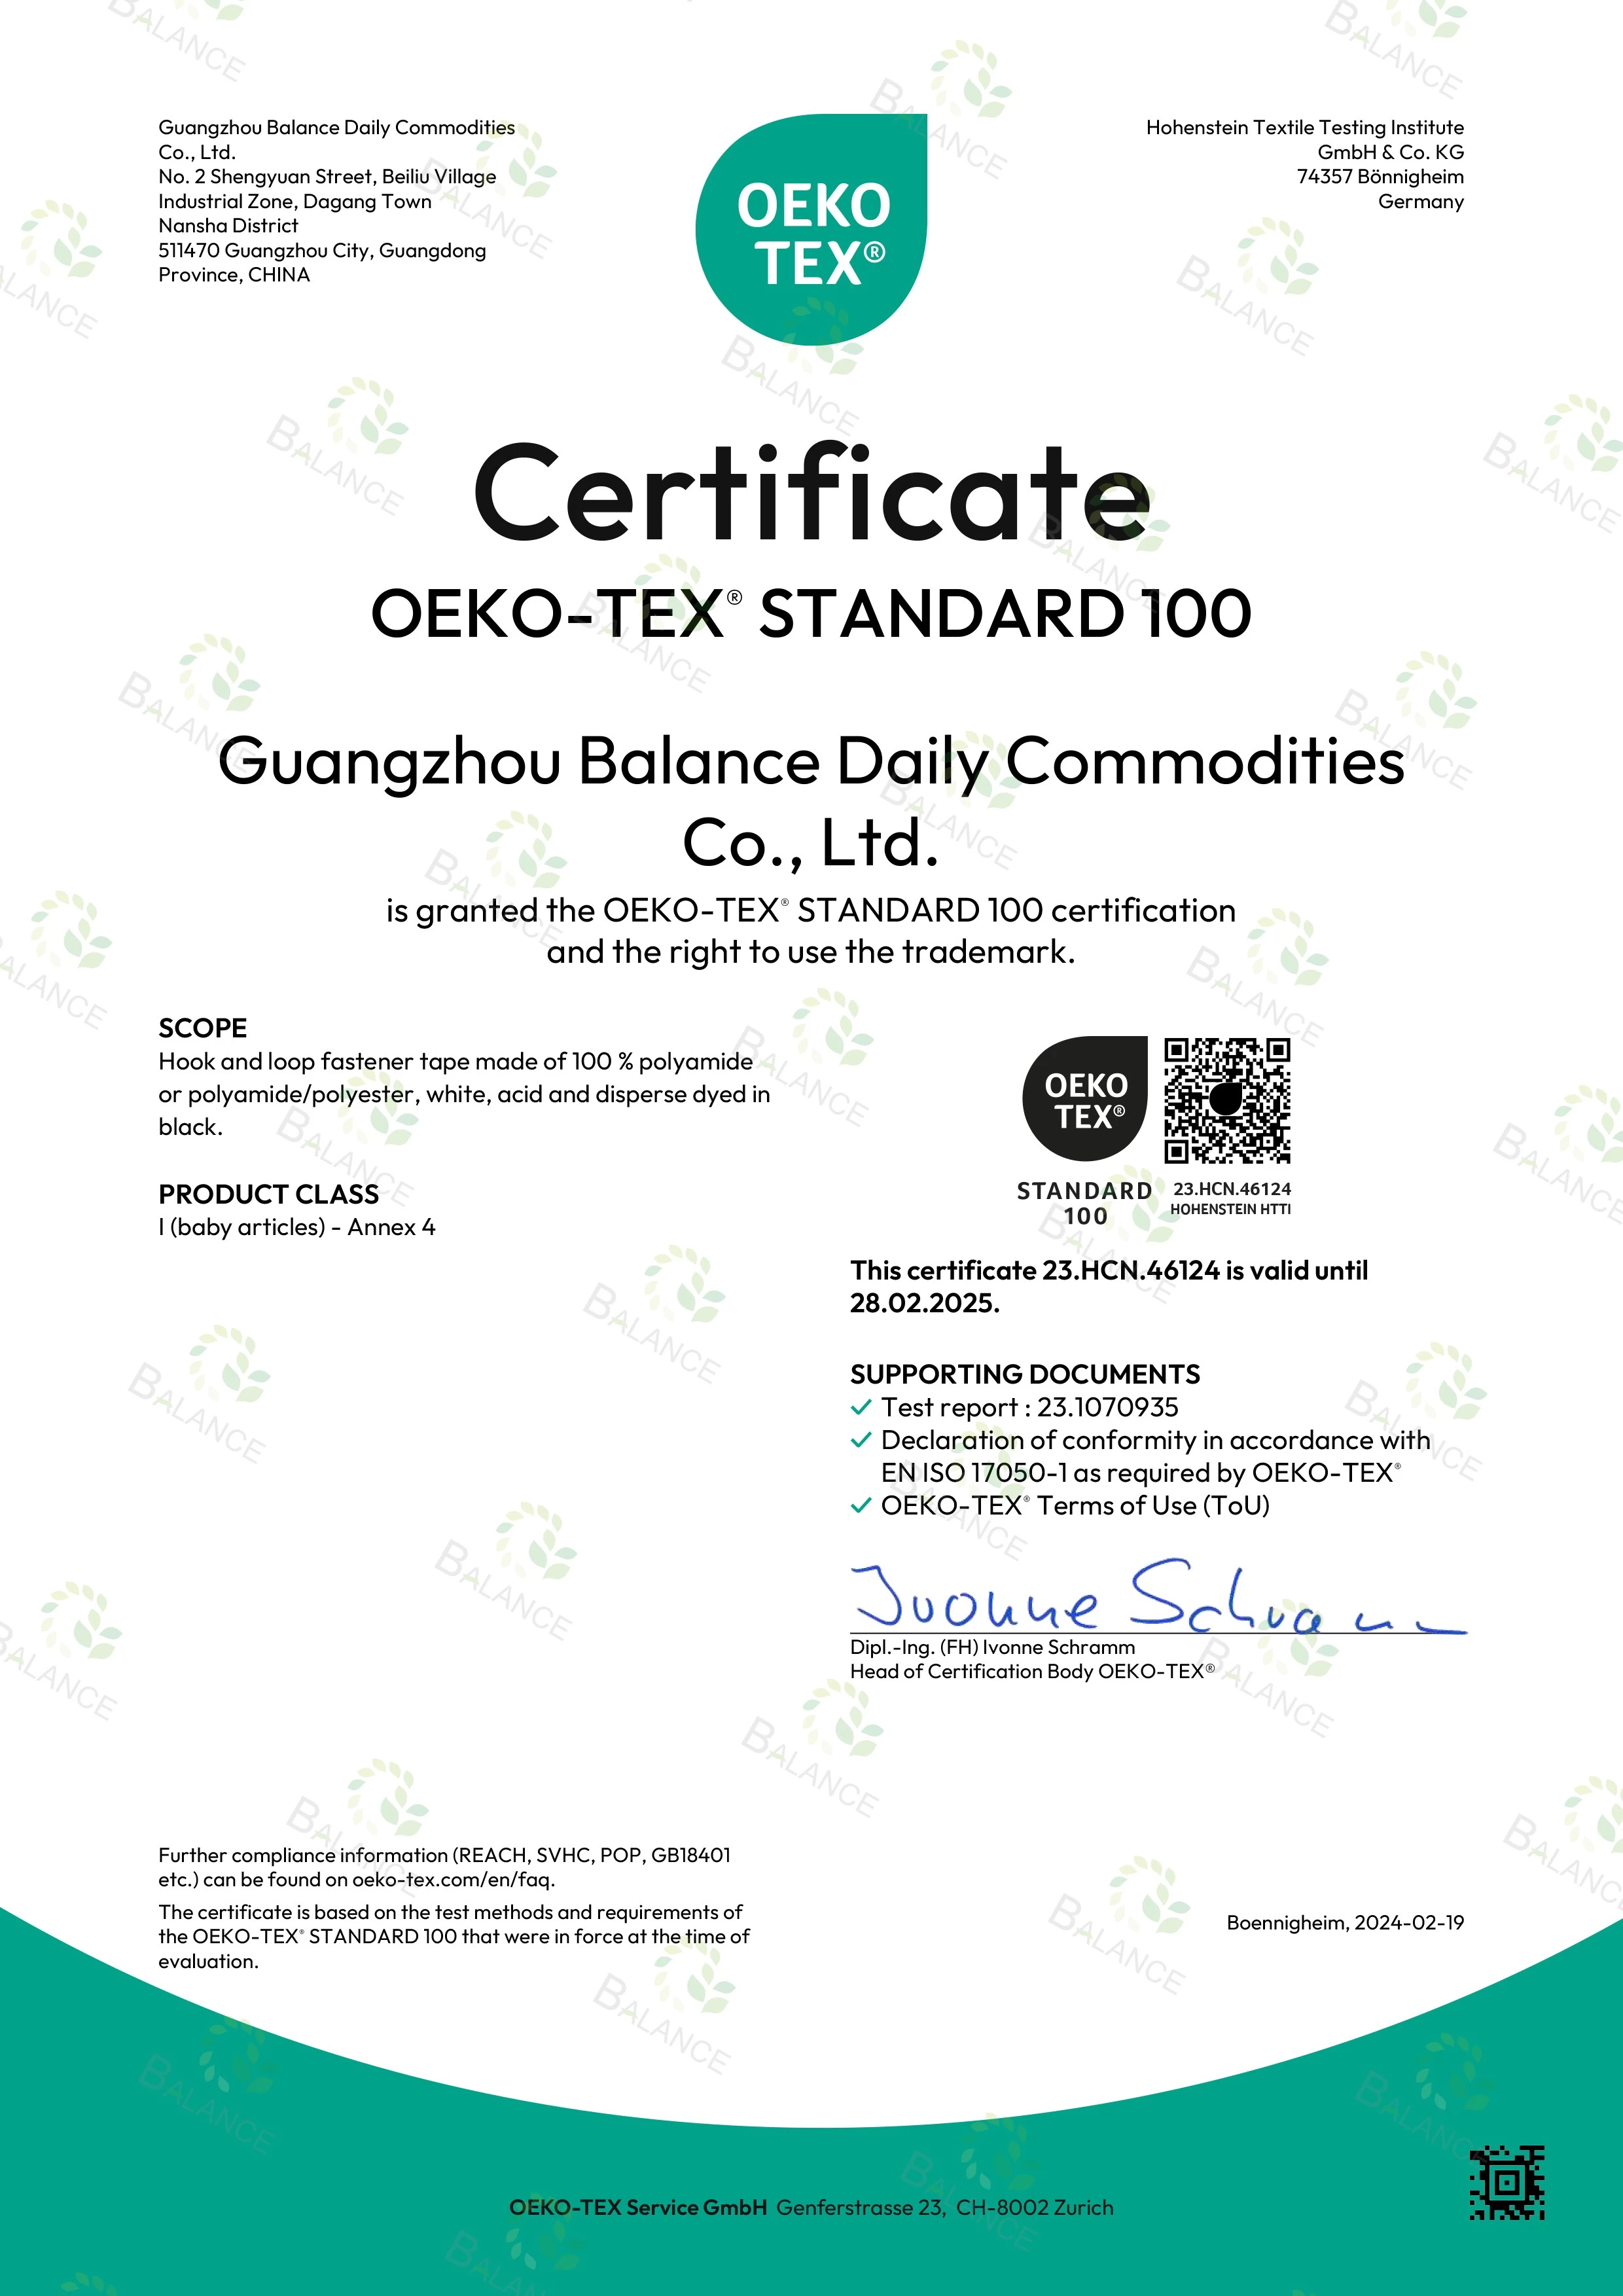 ¡Noticias emocionantes! Nuestras cintas de velcro han obtenido la certificación STANDARD 100 de OEKO-TEX